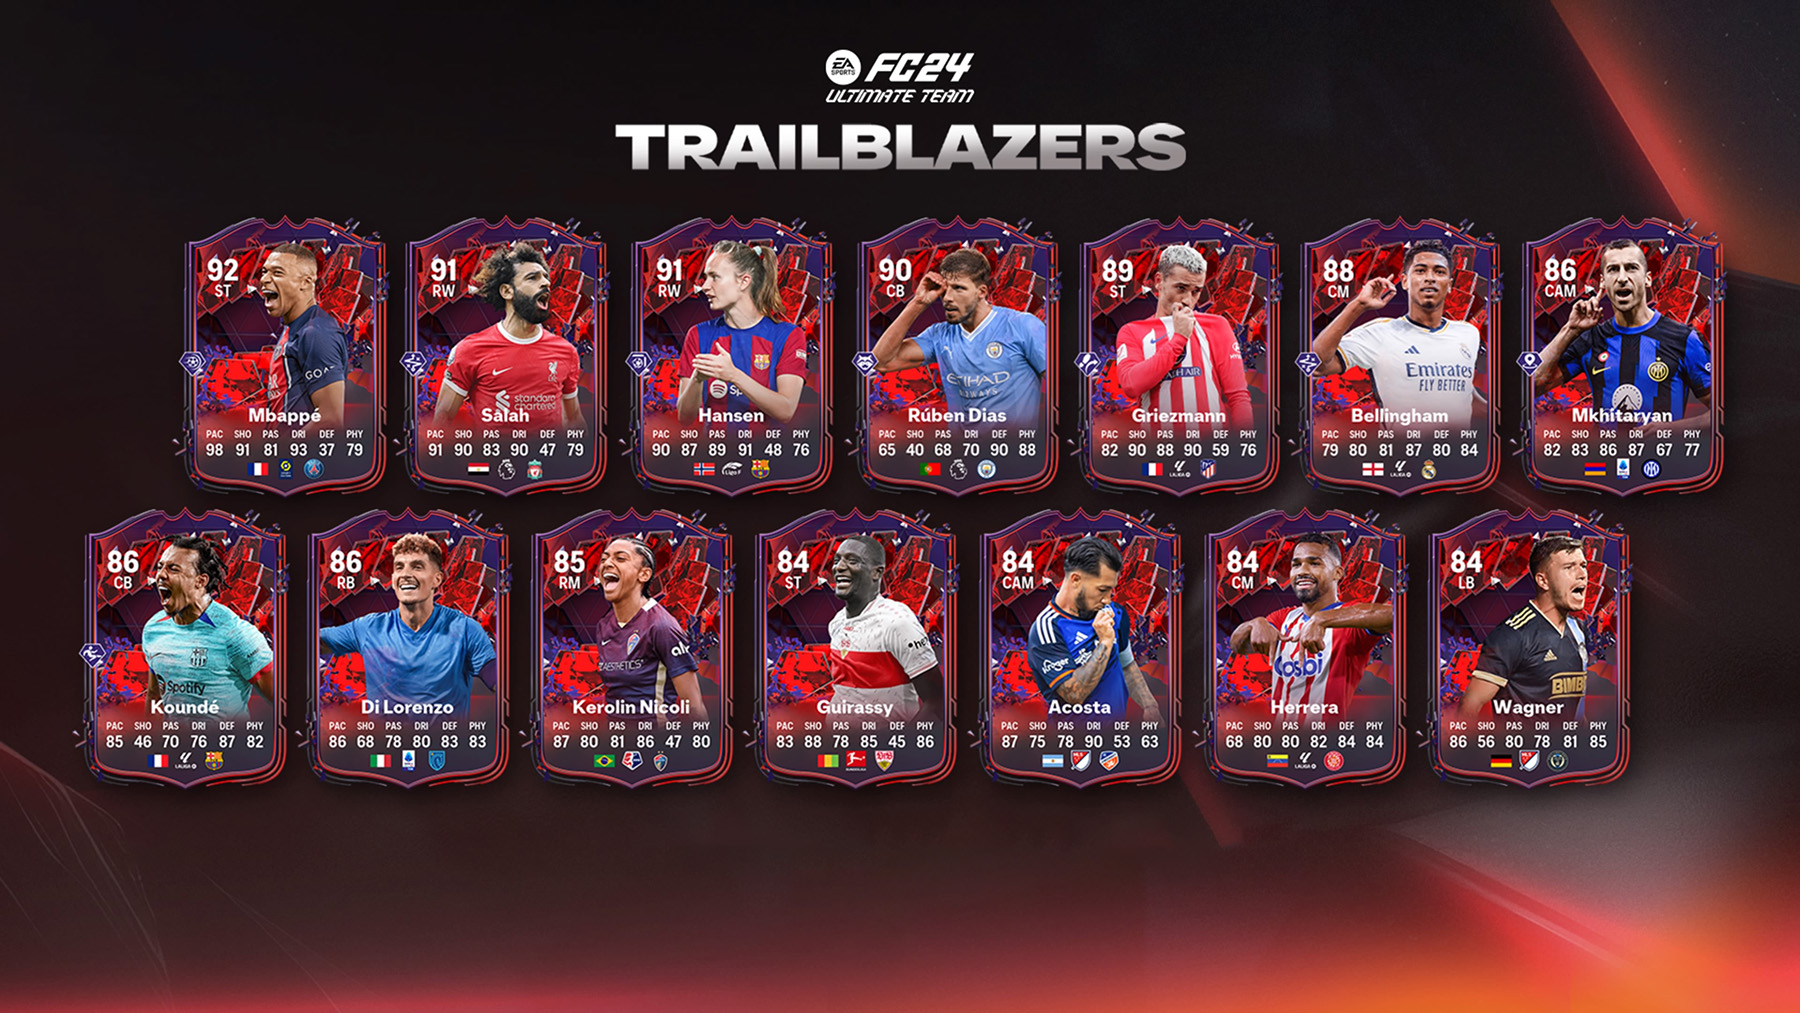 Trailblazers Players